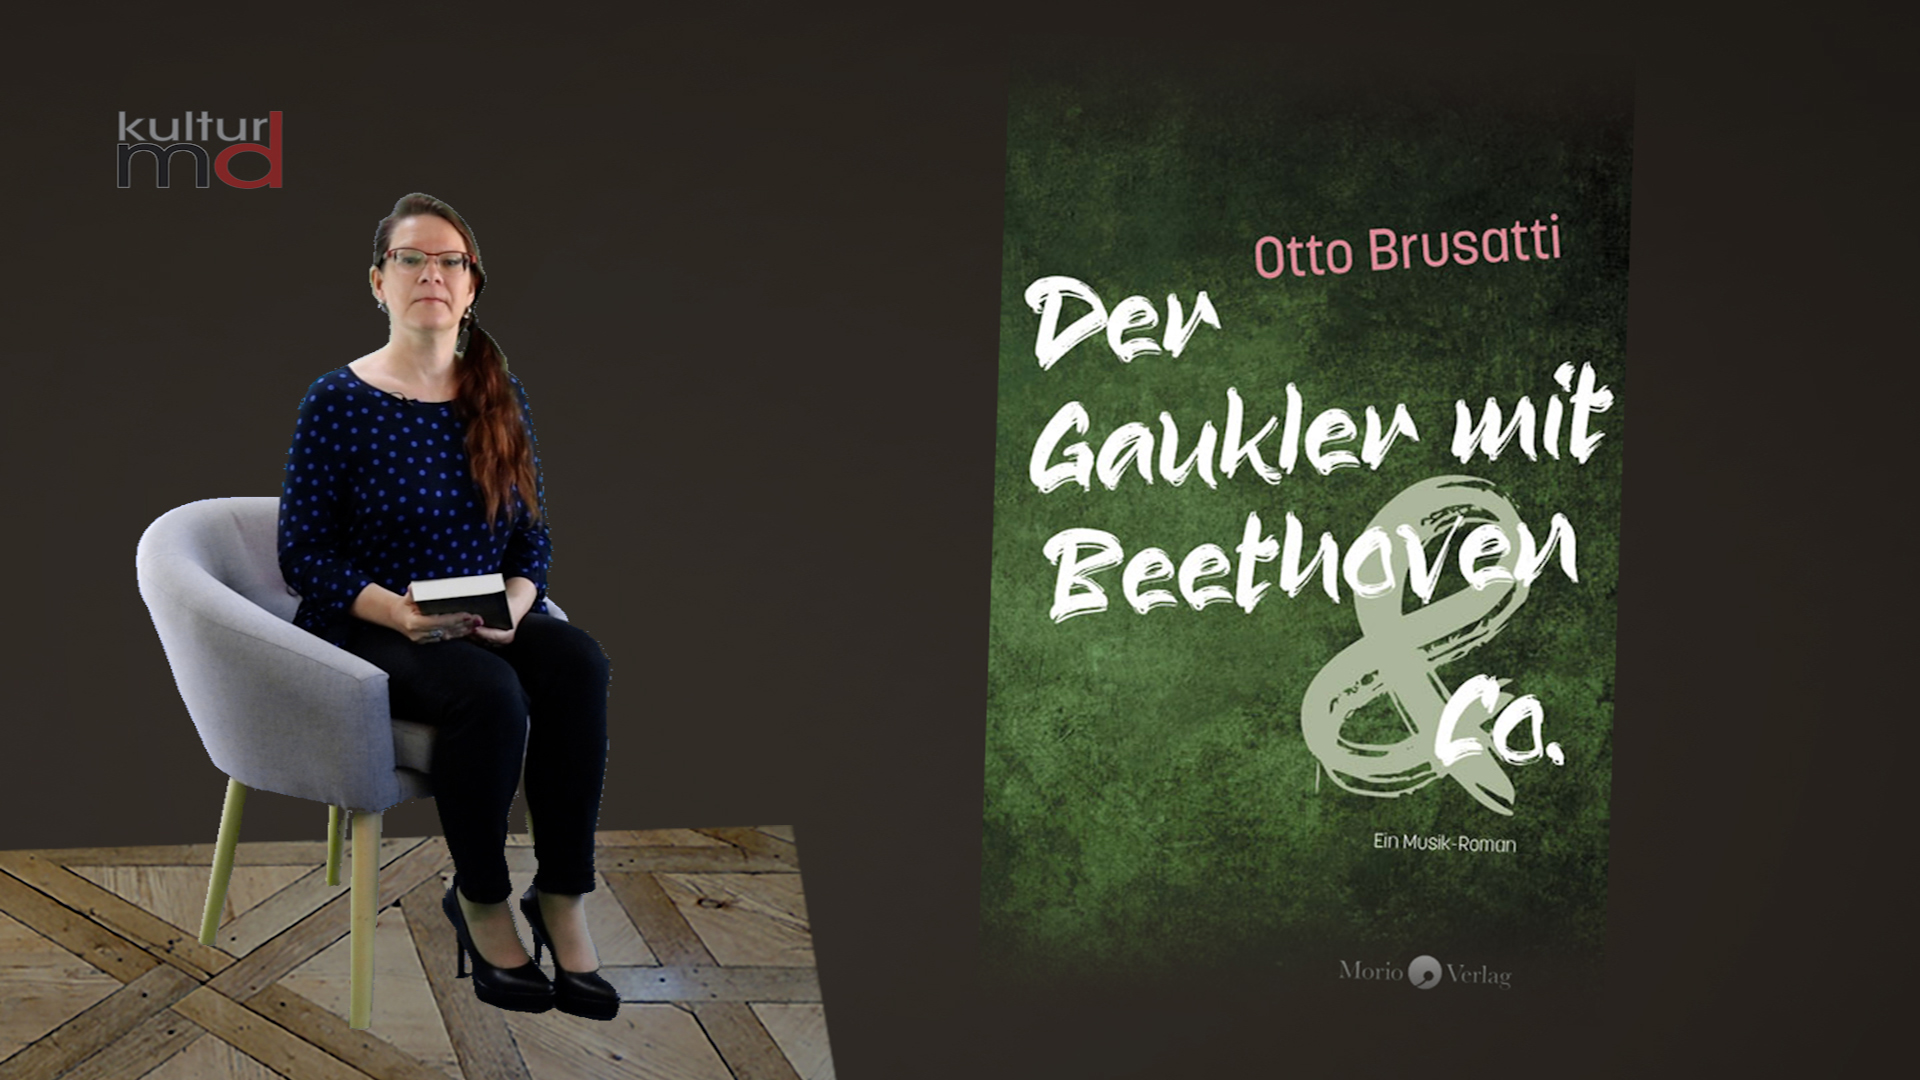 Rezension Otto Brusatti: Der Gaukler mit Beethoven & Co.